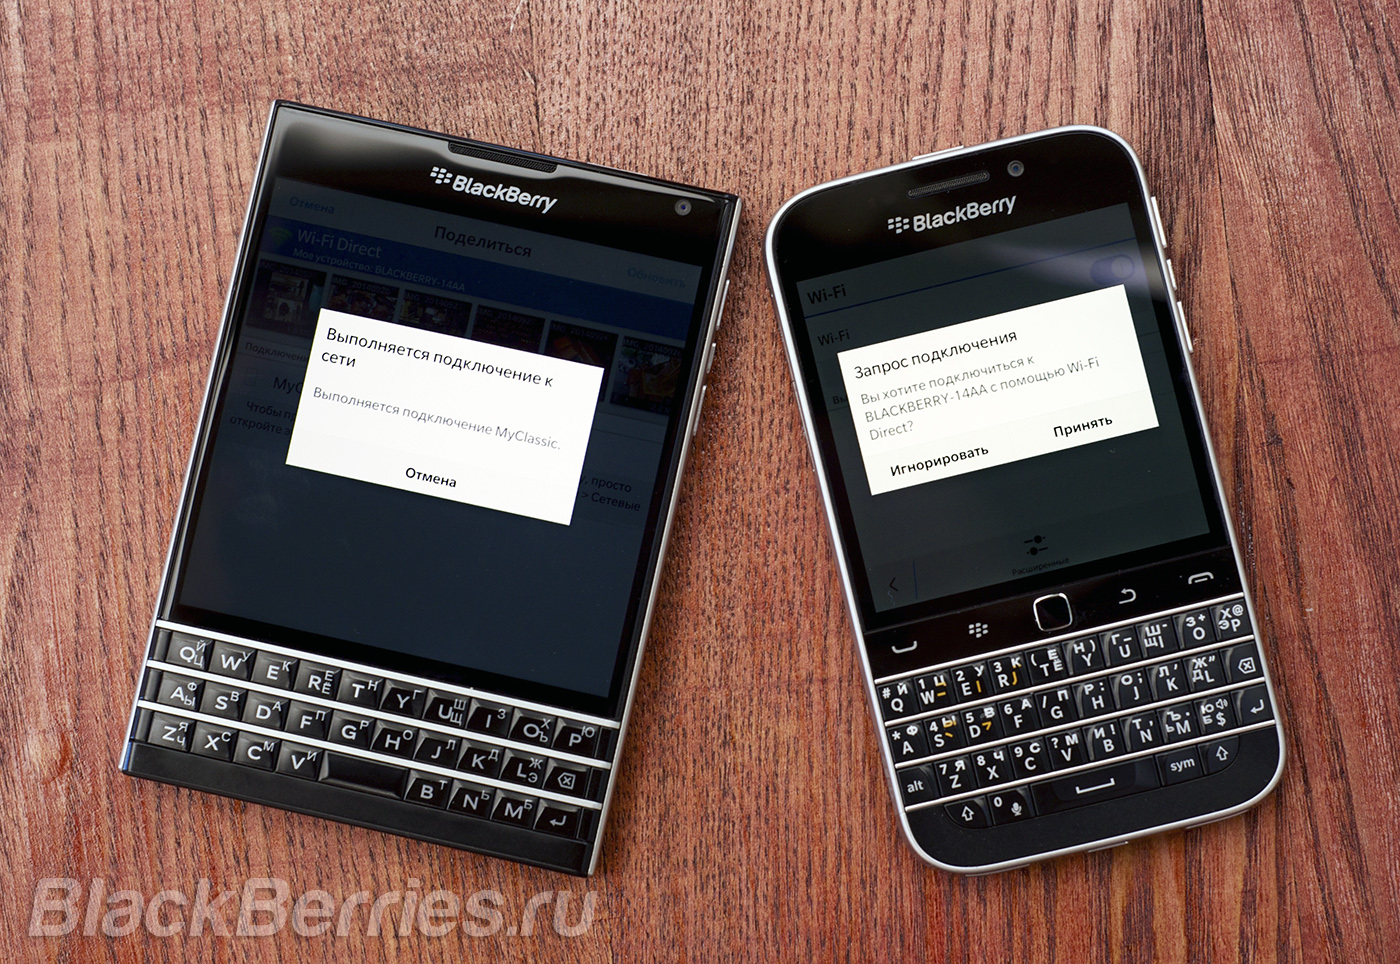 Як швидко поділитися файлами за допомогою wi-fi direct на blackberry, blackberry в росії